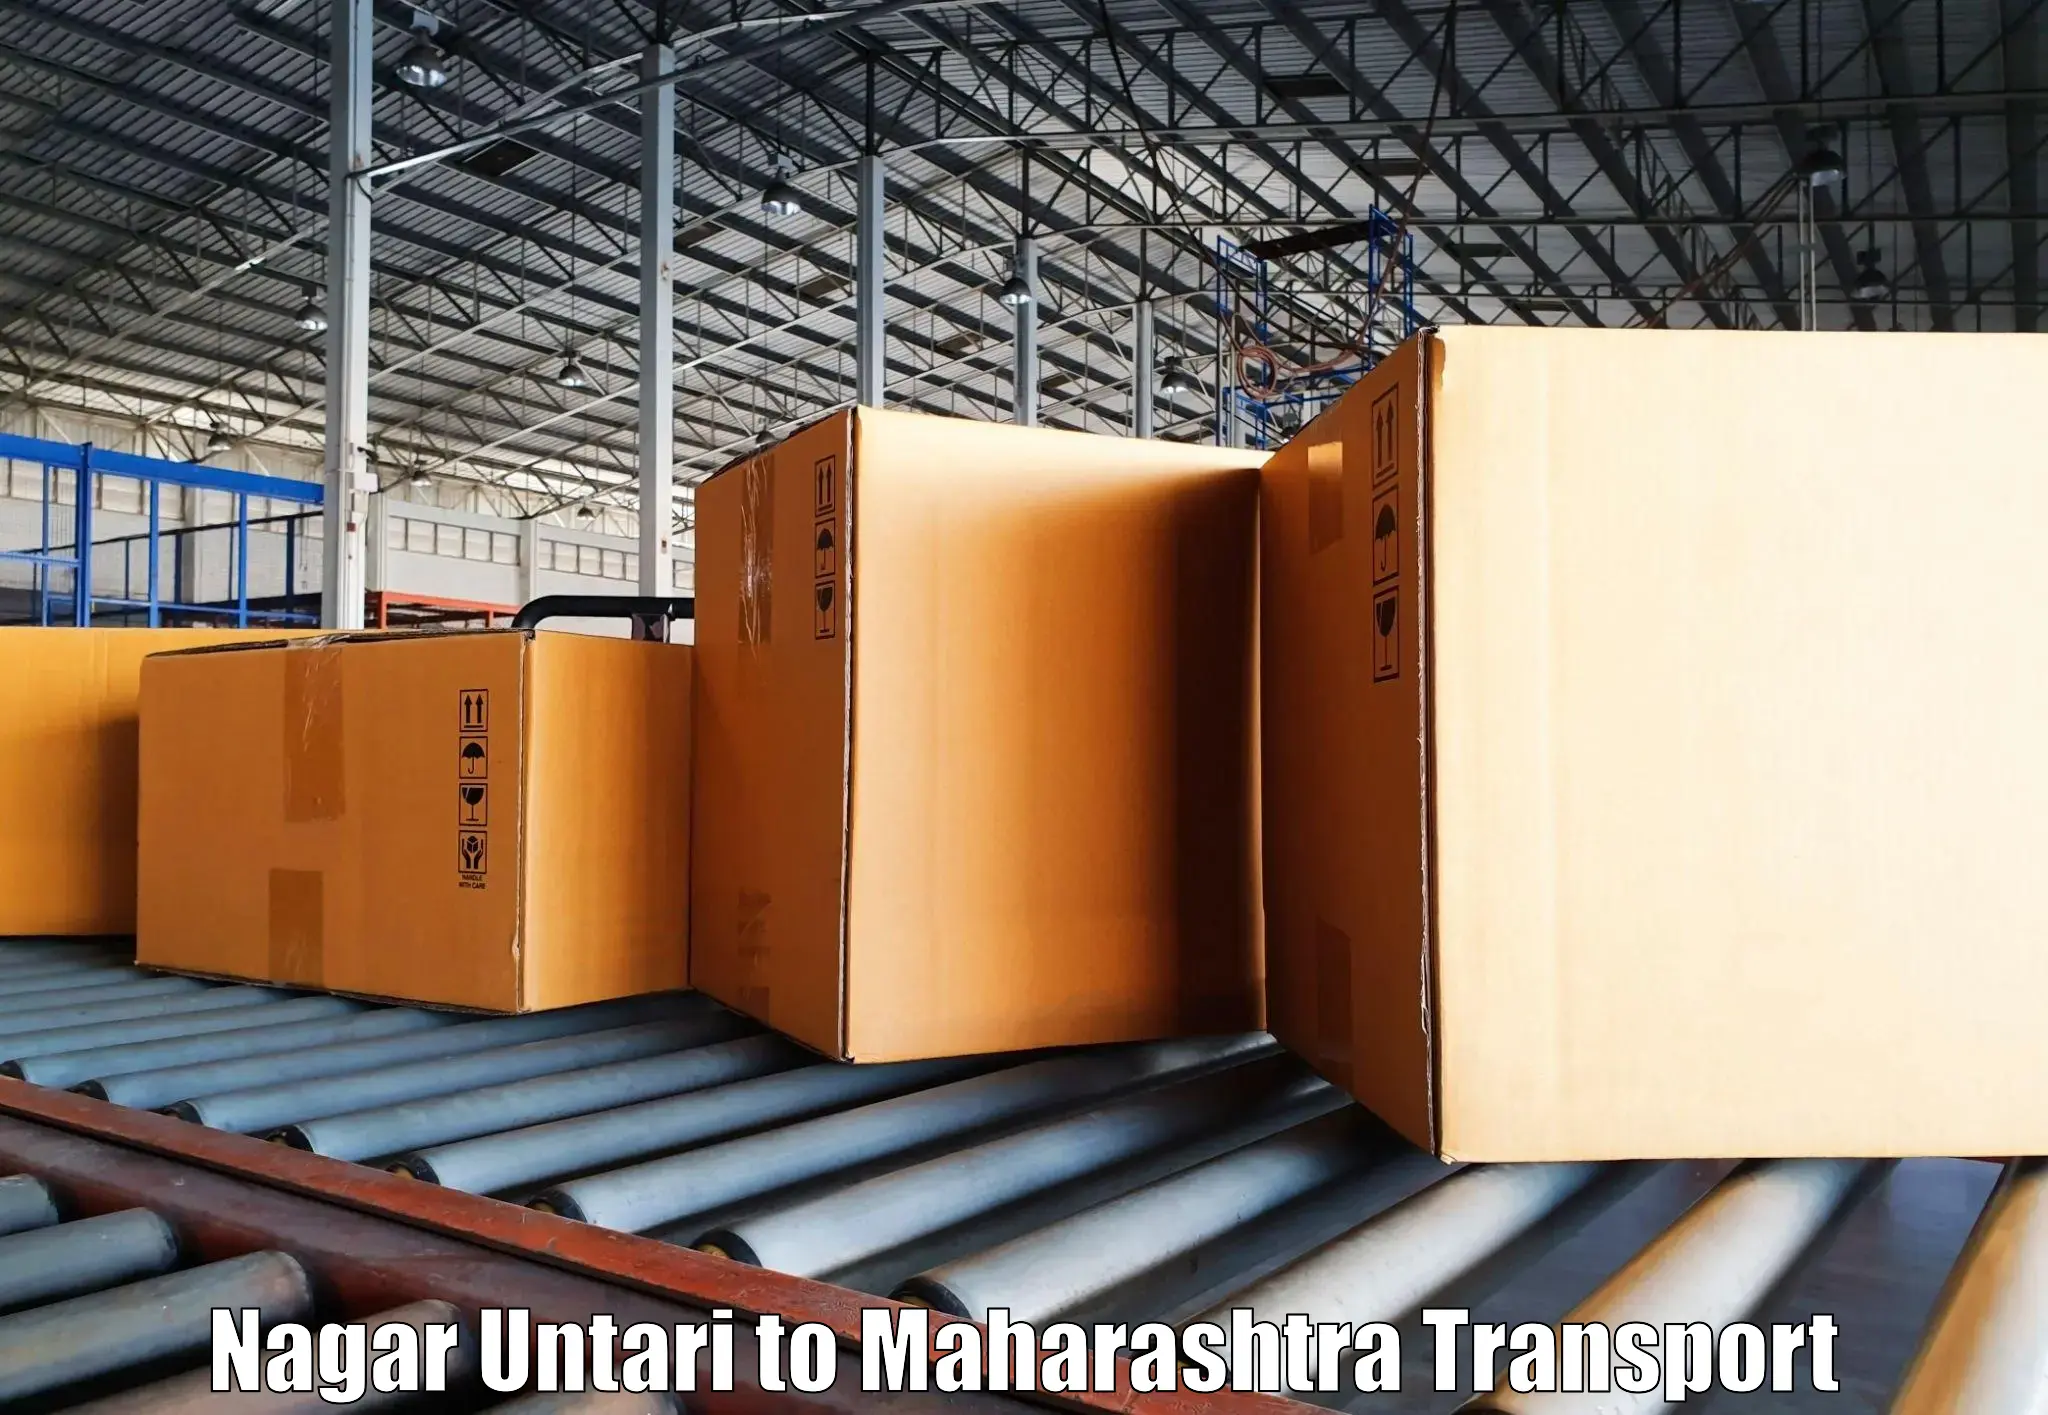 Truck transport companies in India Nagar Untari to Ganpatipule